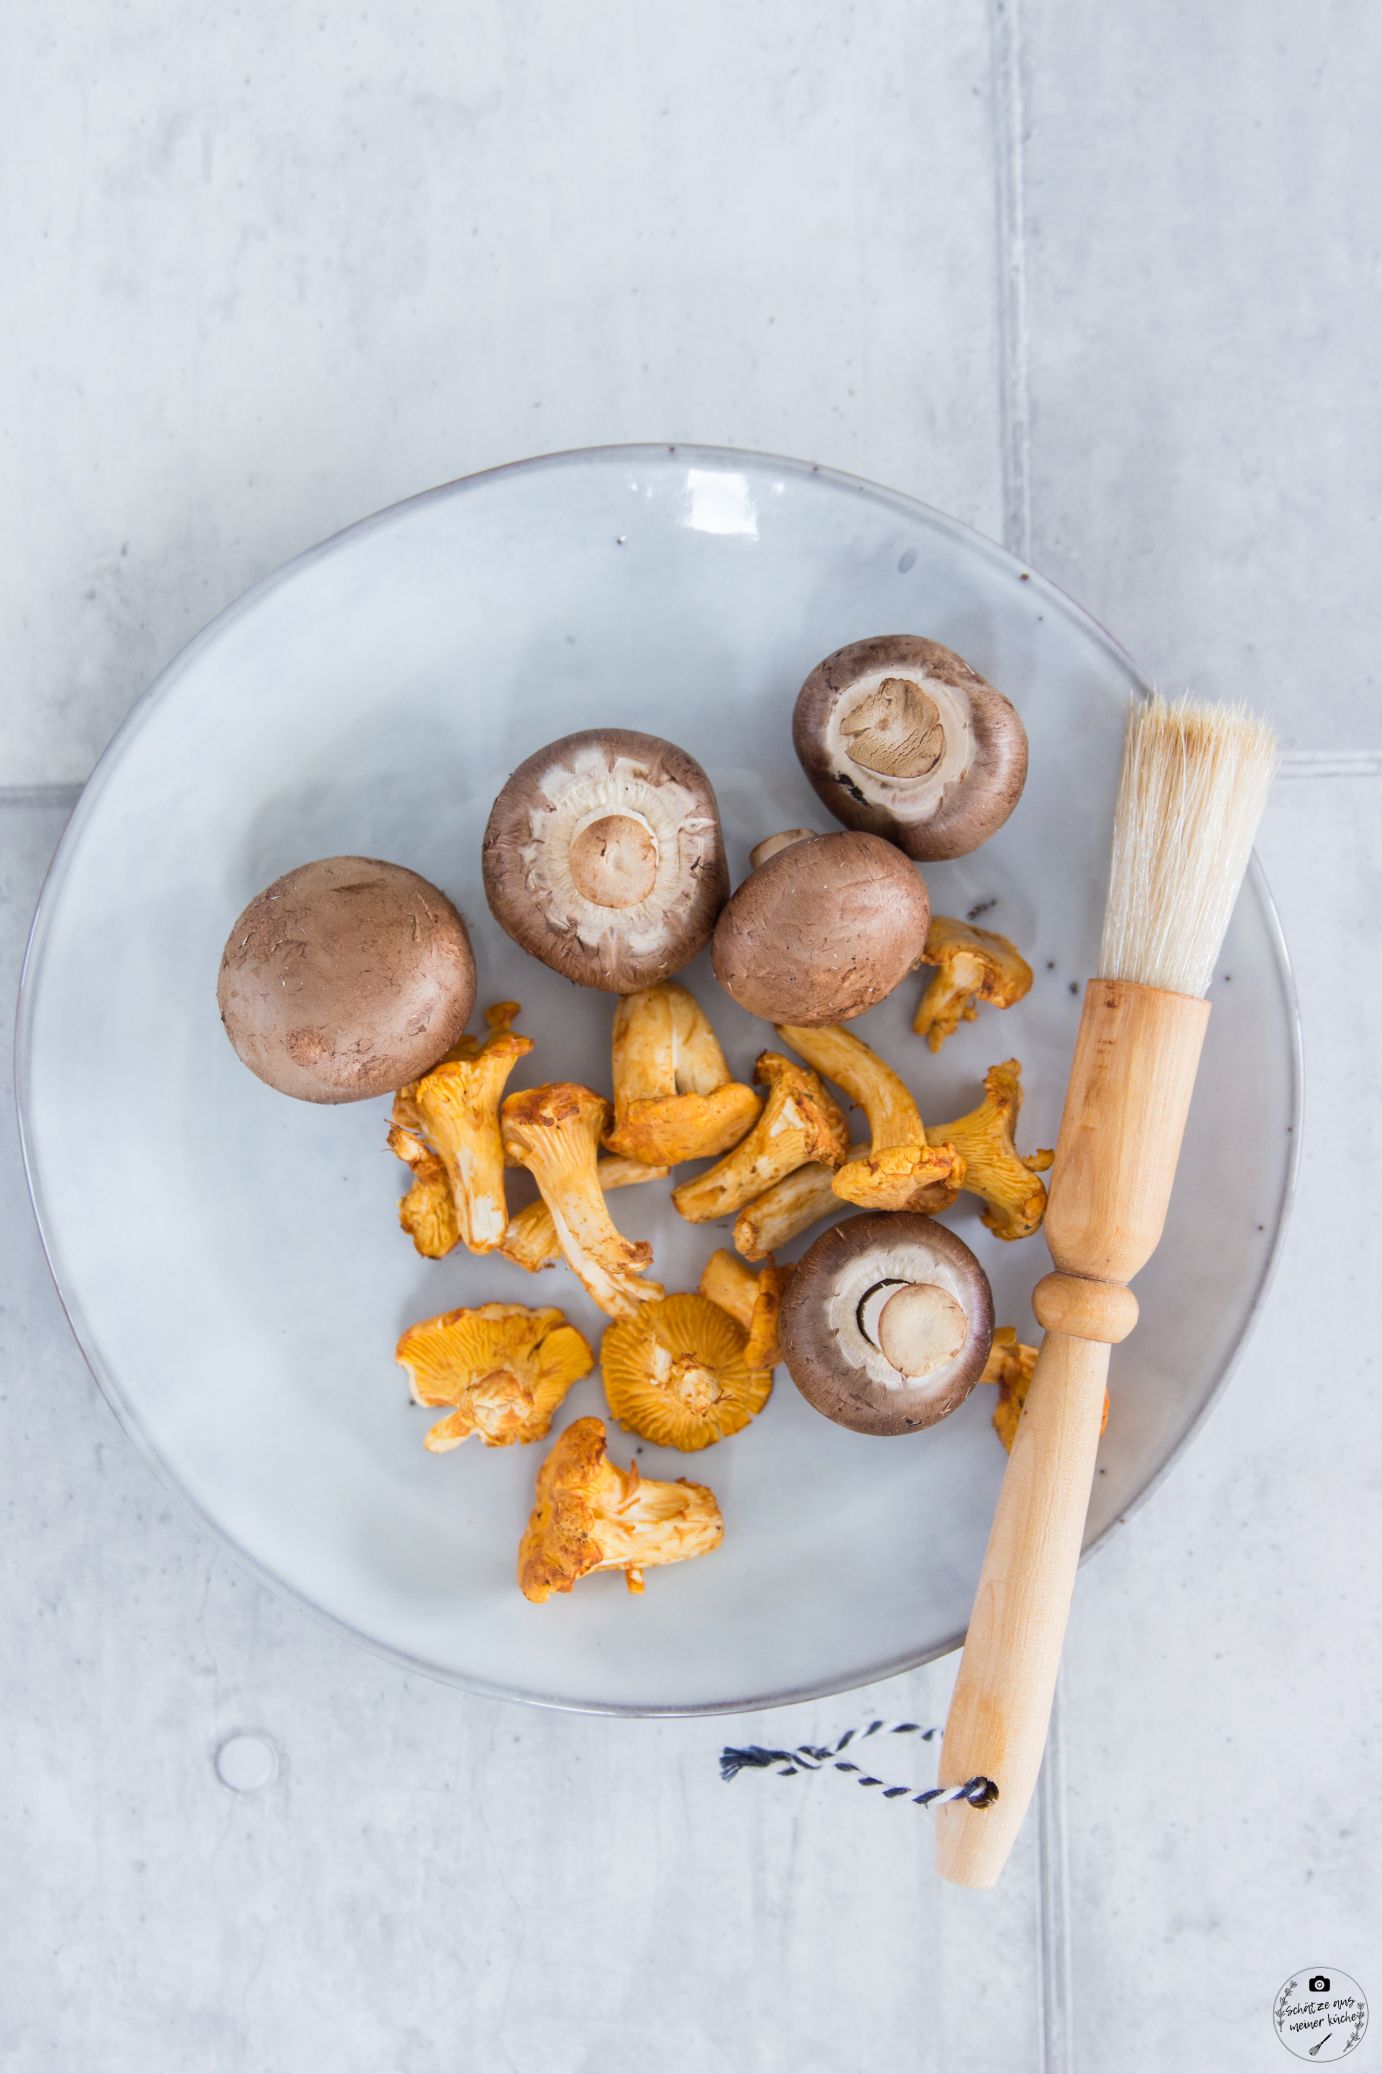 Gebratene Maultaschen mit Hokkaido-Kürbissauce und Pilz-Kräuter-Gemüse Bürger Maultaschen Schätze aus meiner Küche